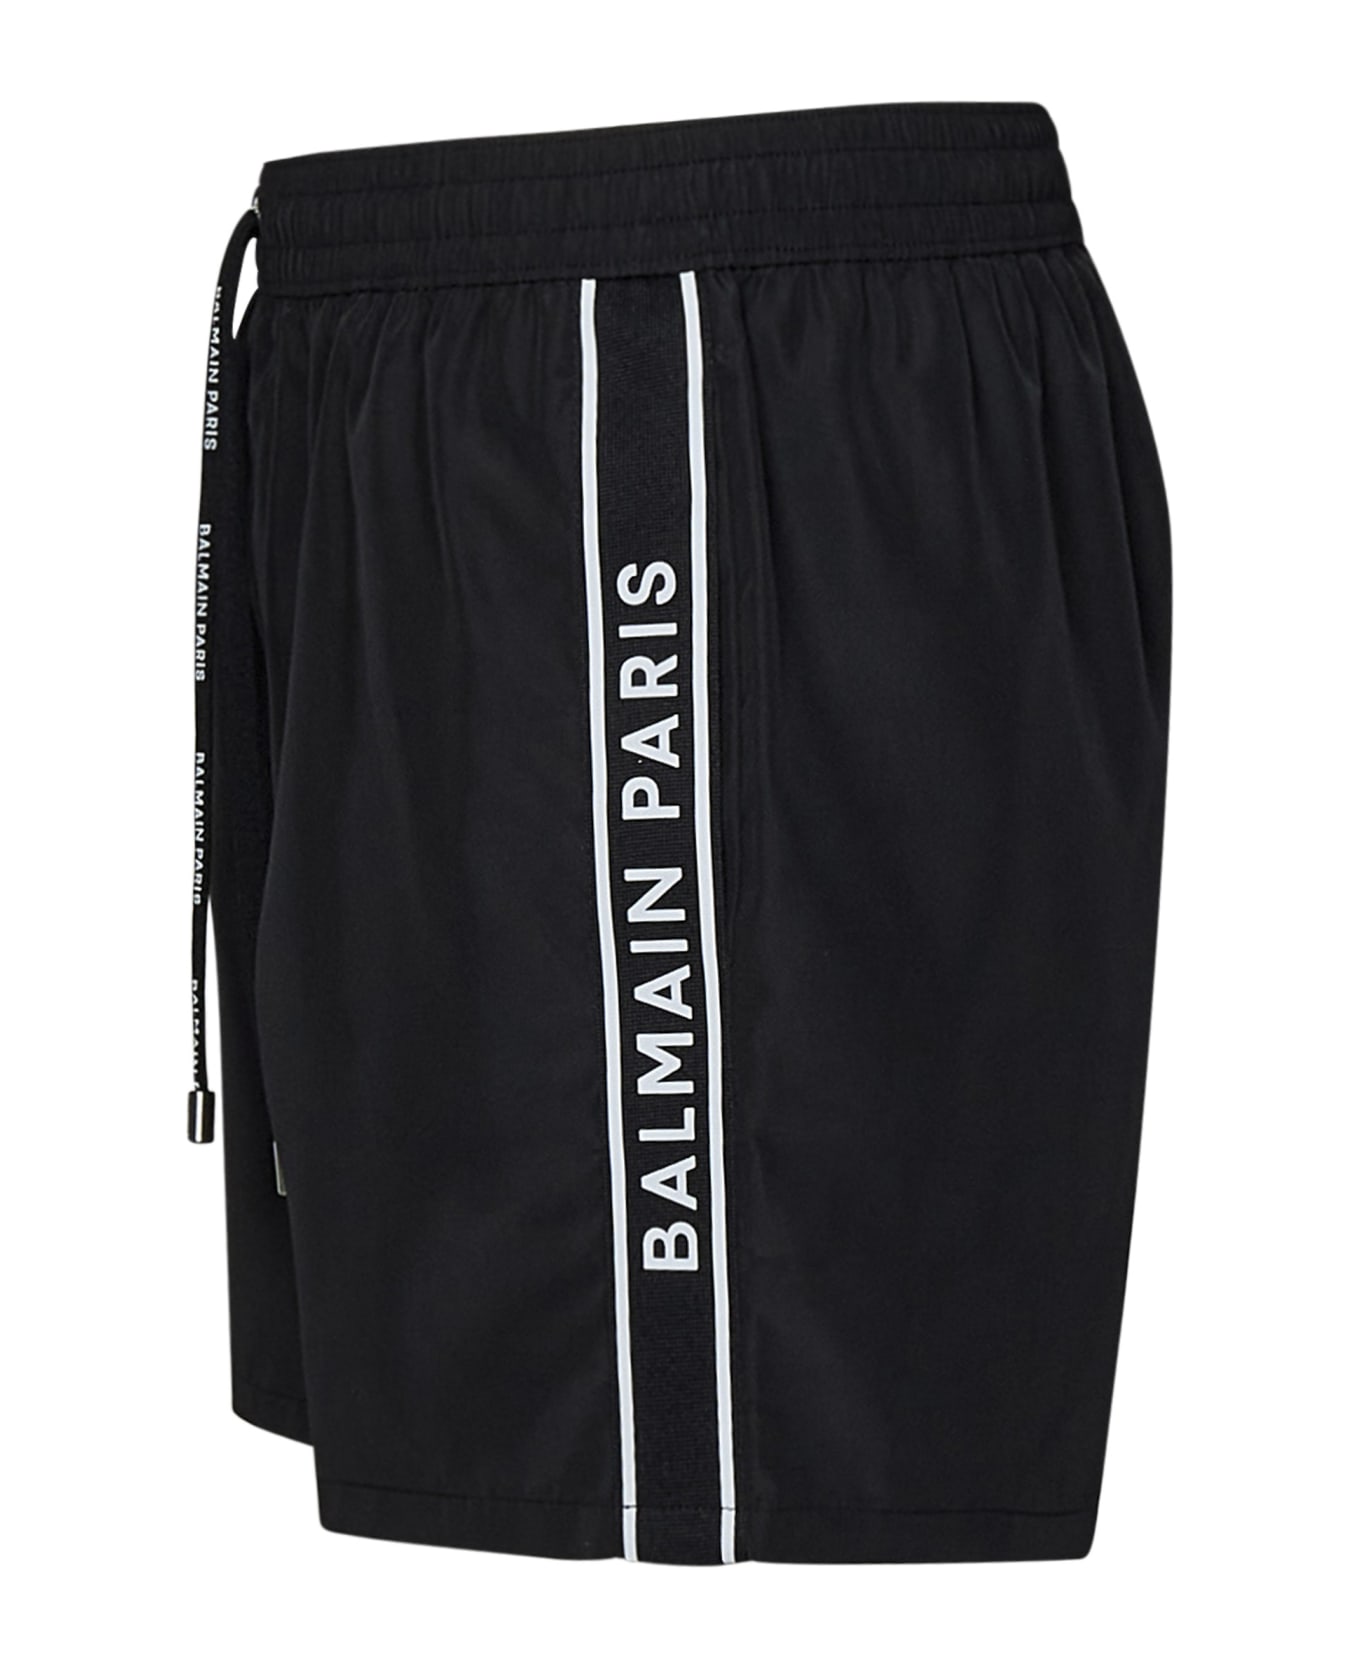 Balmain Paris Swimsuit - Black スイムトランクス